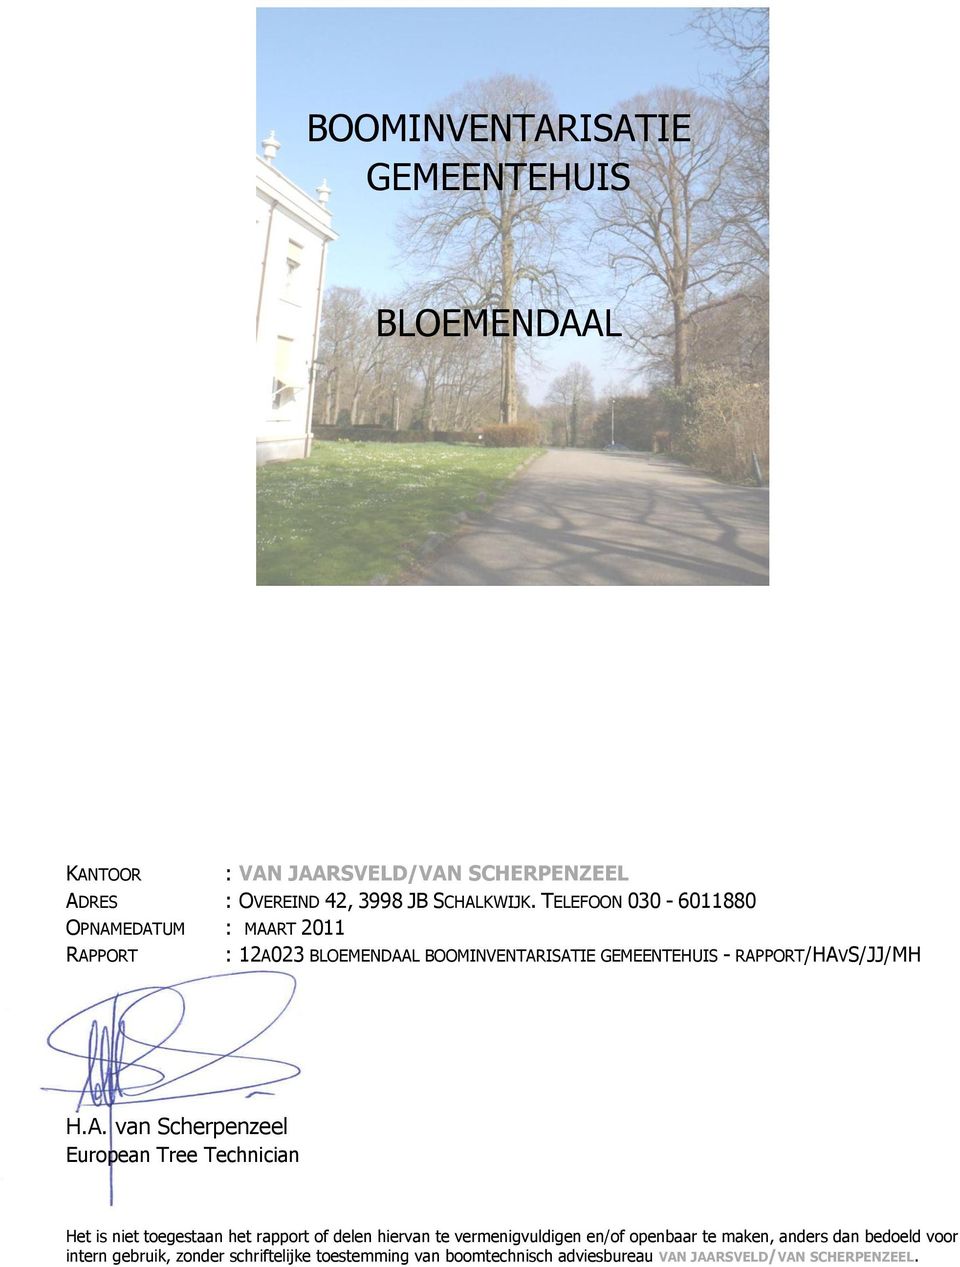 EDATUM : MAART 2011 RAPPORT : 12A023 BLOEMENDAAL BOOMINVENTARISATIE GEMEENTEHUIS - RAPPORT/HAVS/JJ/MH H.A. van Scherpenzeel European